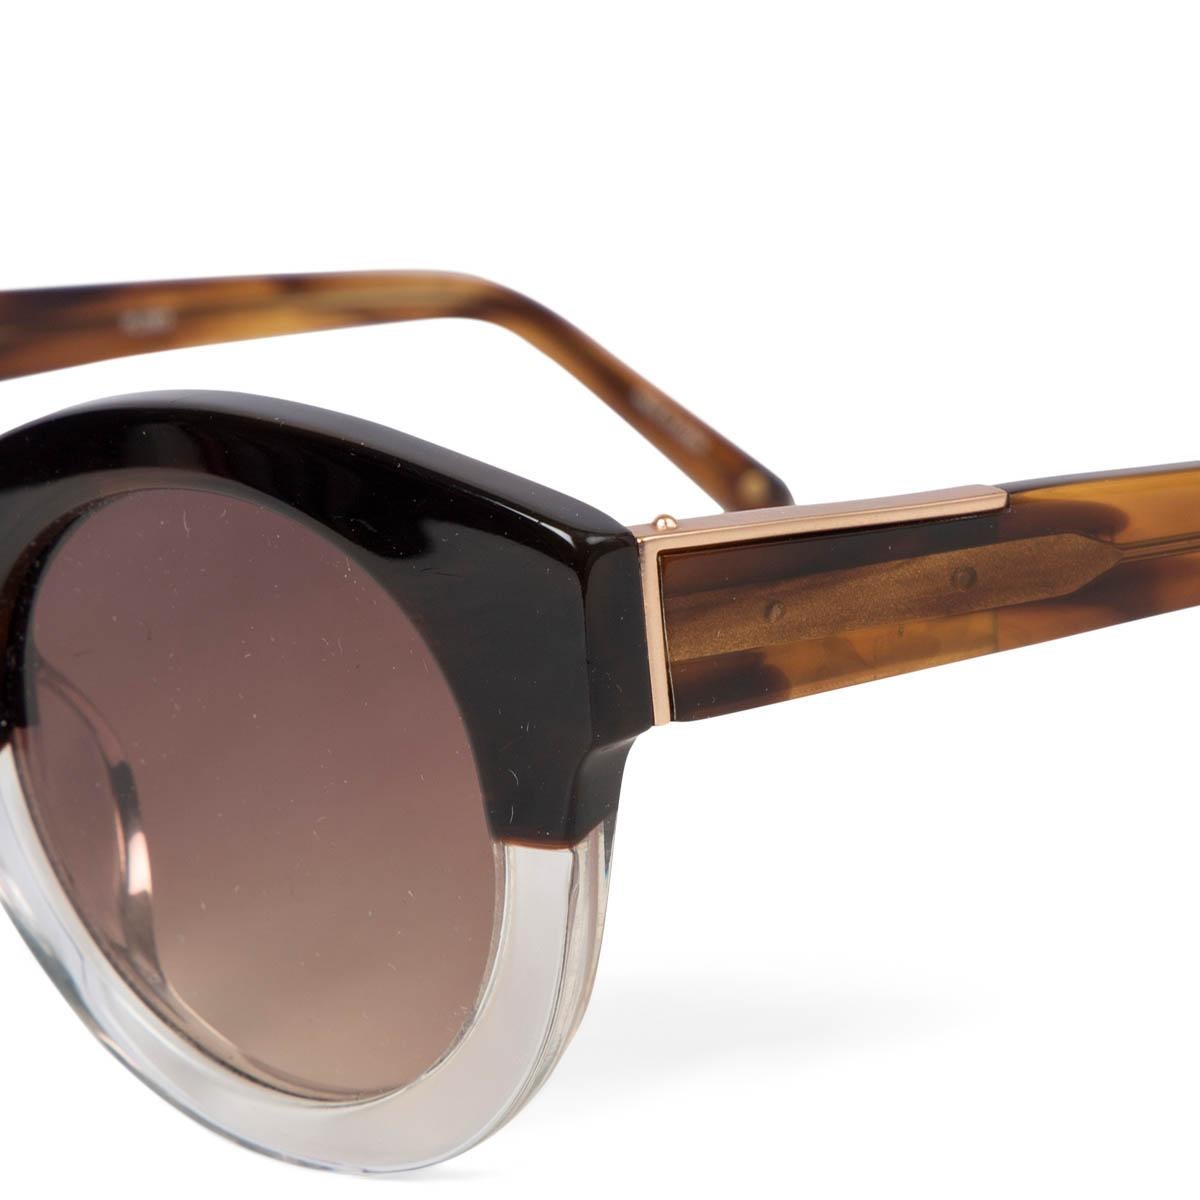 3.1 phillip lim oliver sunglasses